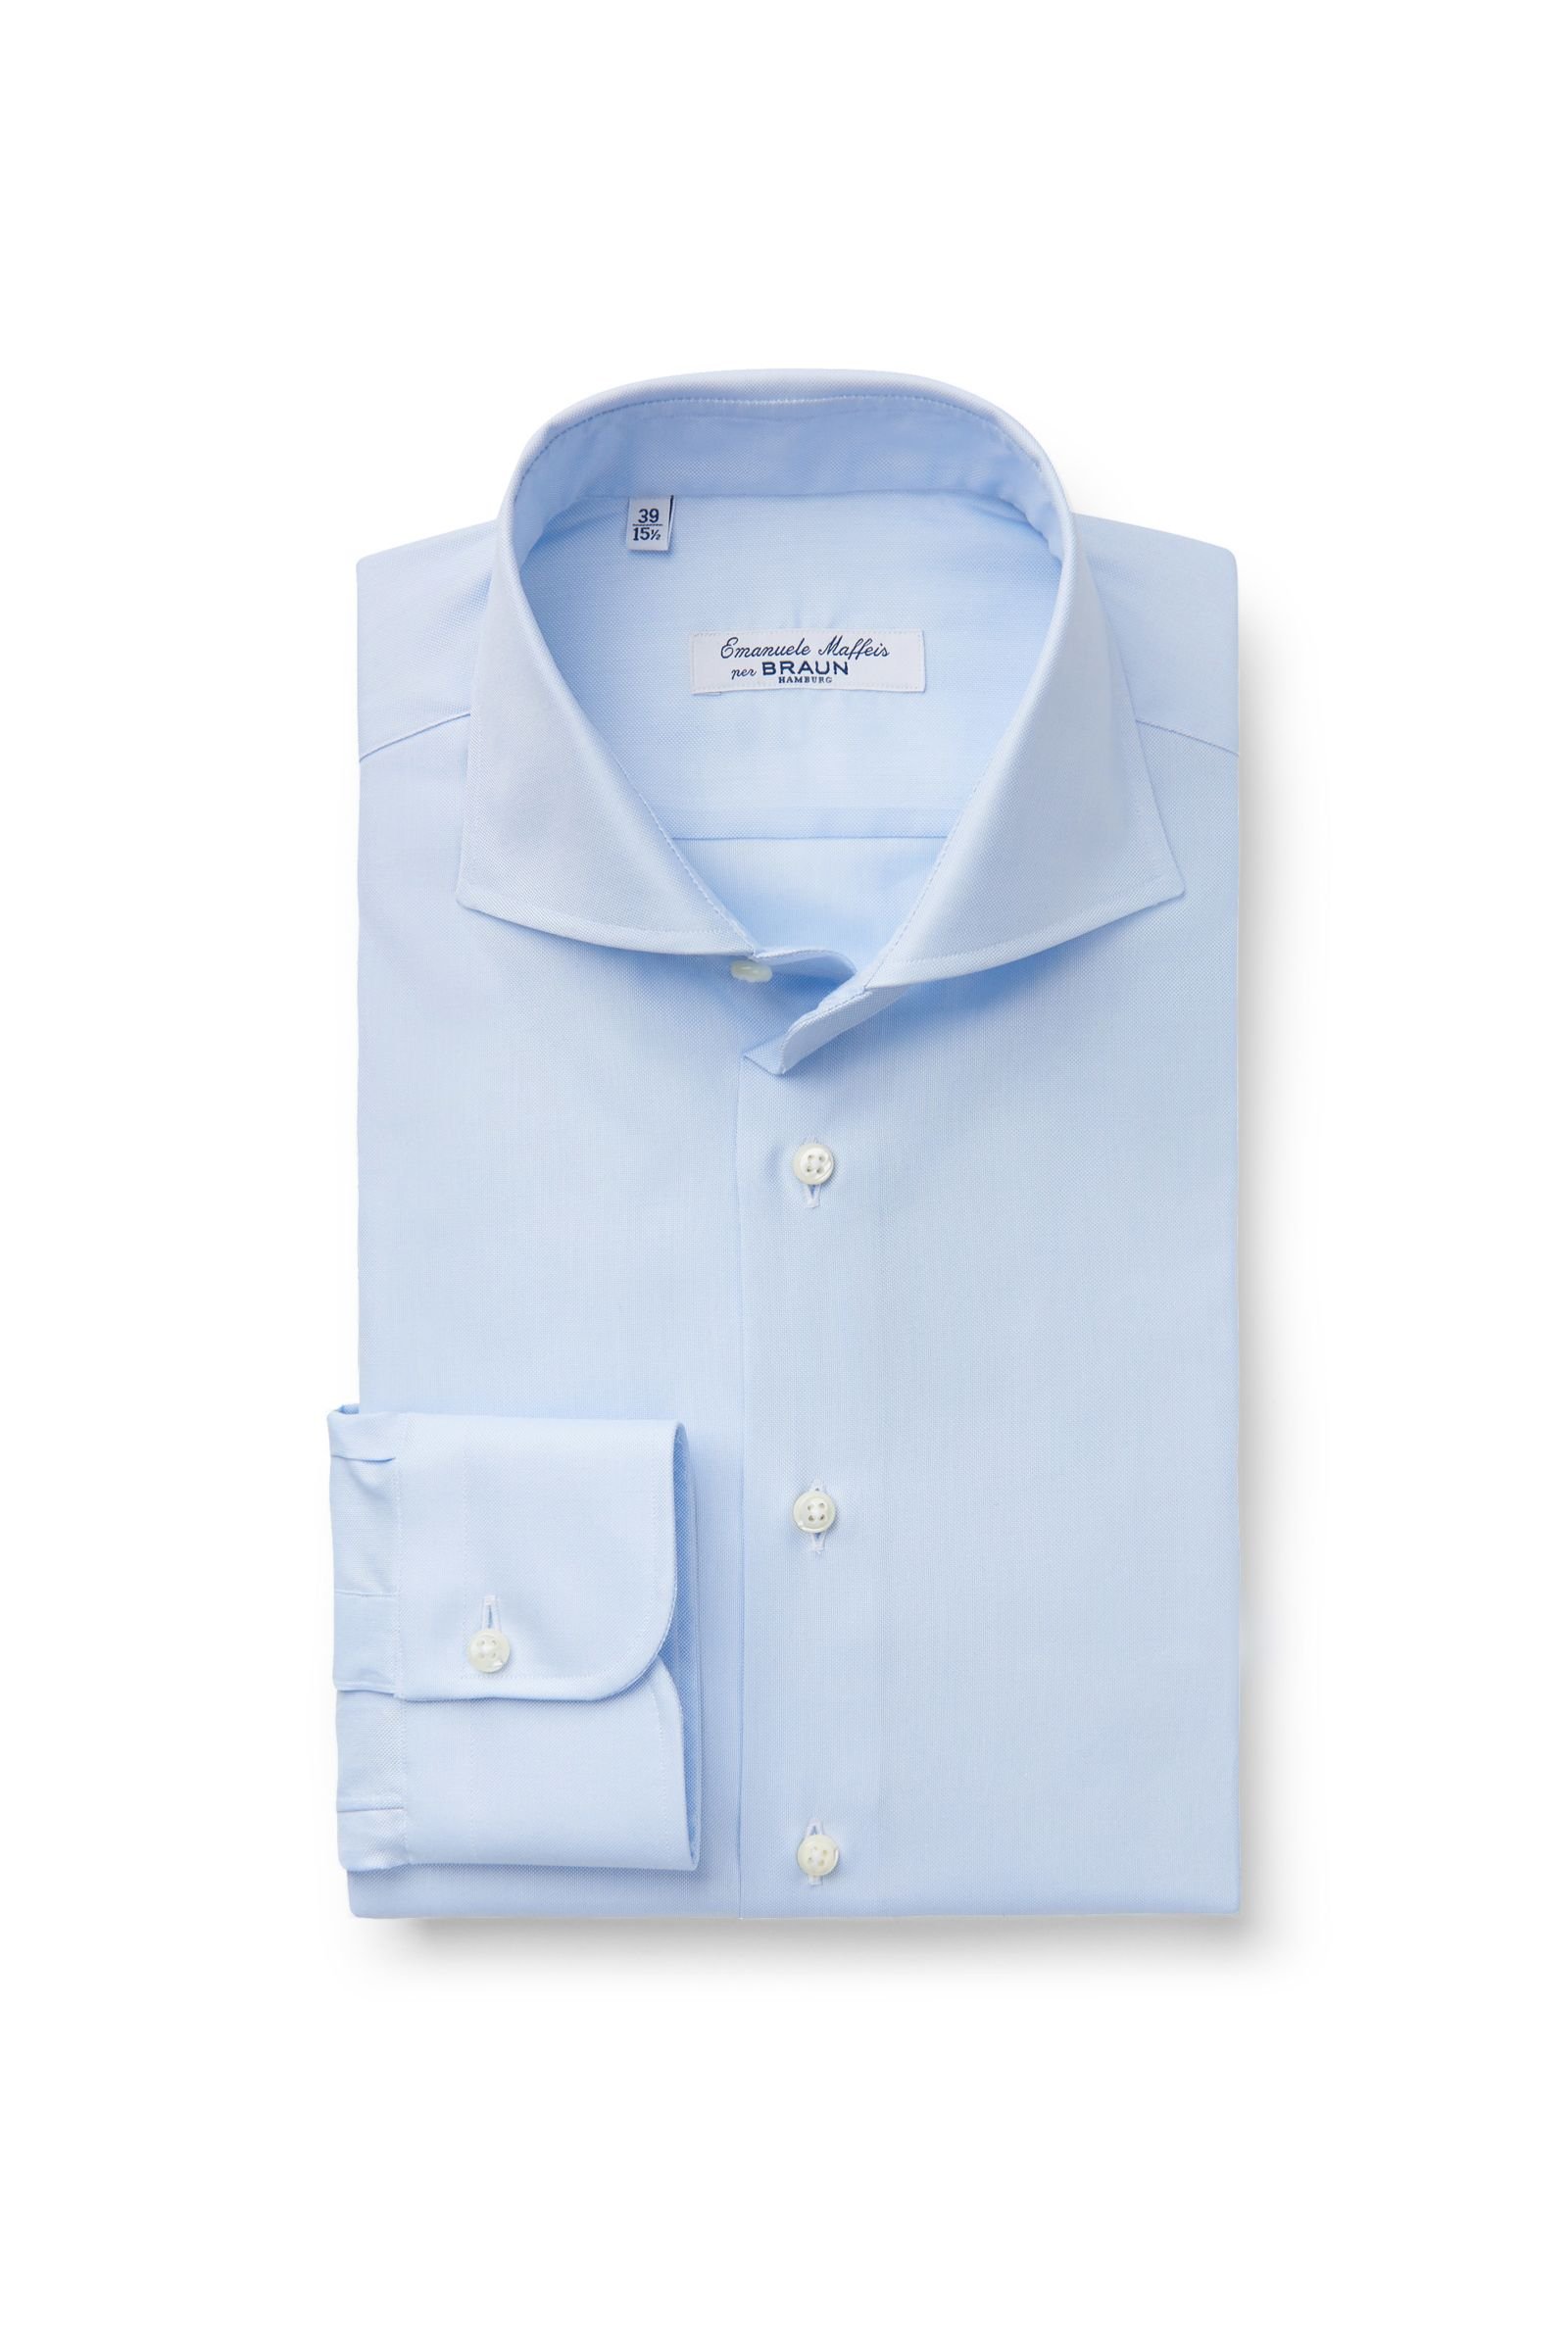 Business shirt 'Tanka' shark collar light blue